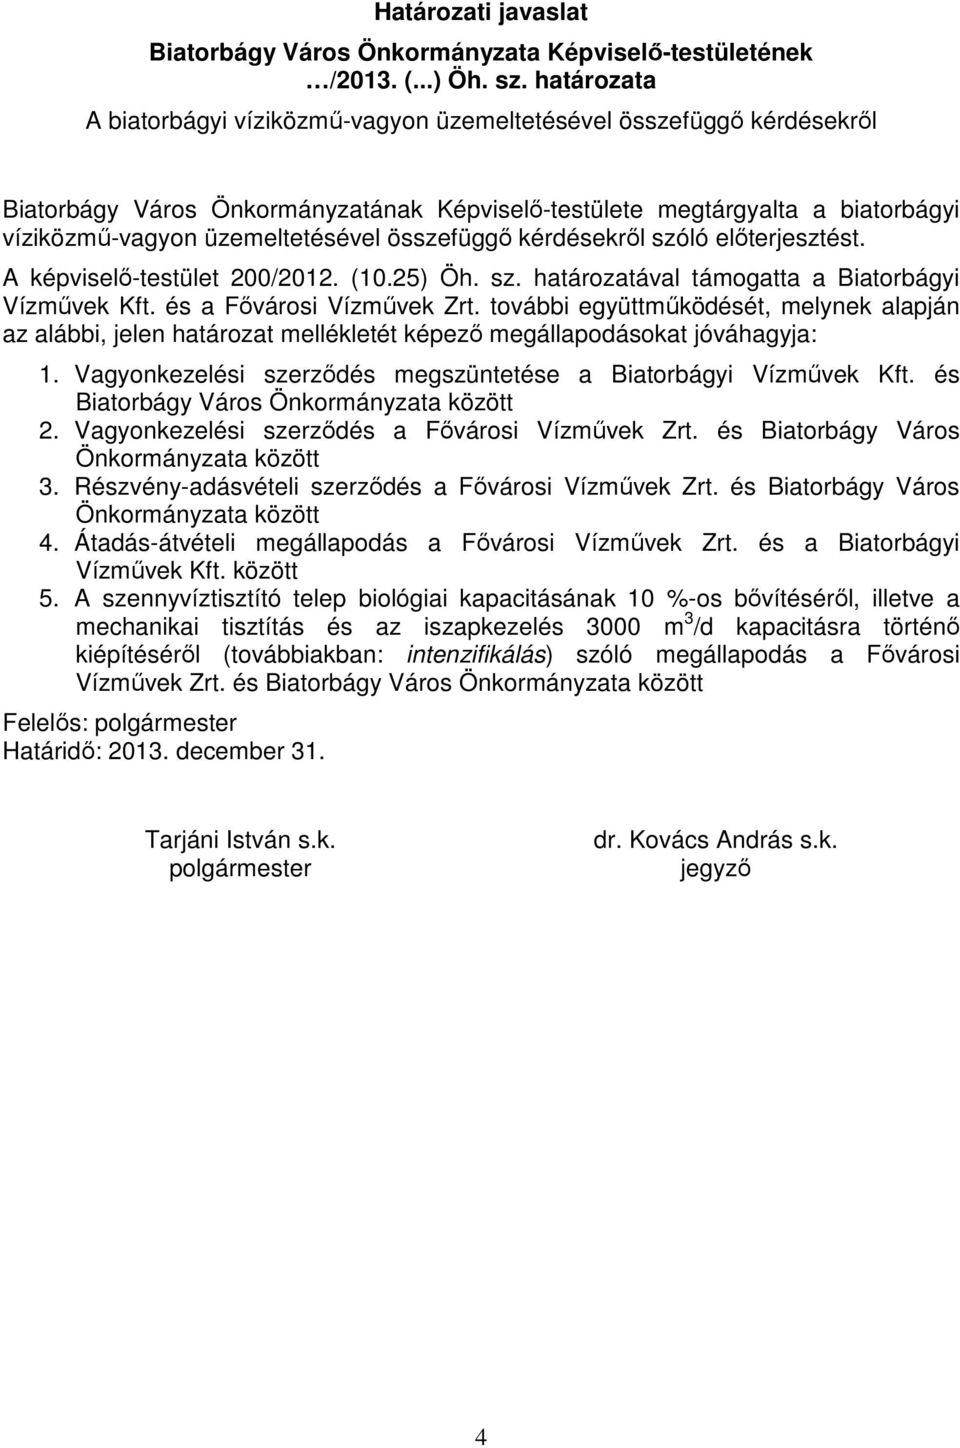 összefüggő kérdésekről szóló előterjesztést. A képviselő-testület 200/2012. (10.25) Öh. sz. határozatával támogatta a Biatorbágyi Vízművek Kft. és a Fővárosi Vízművek Zrt.